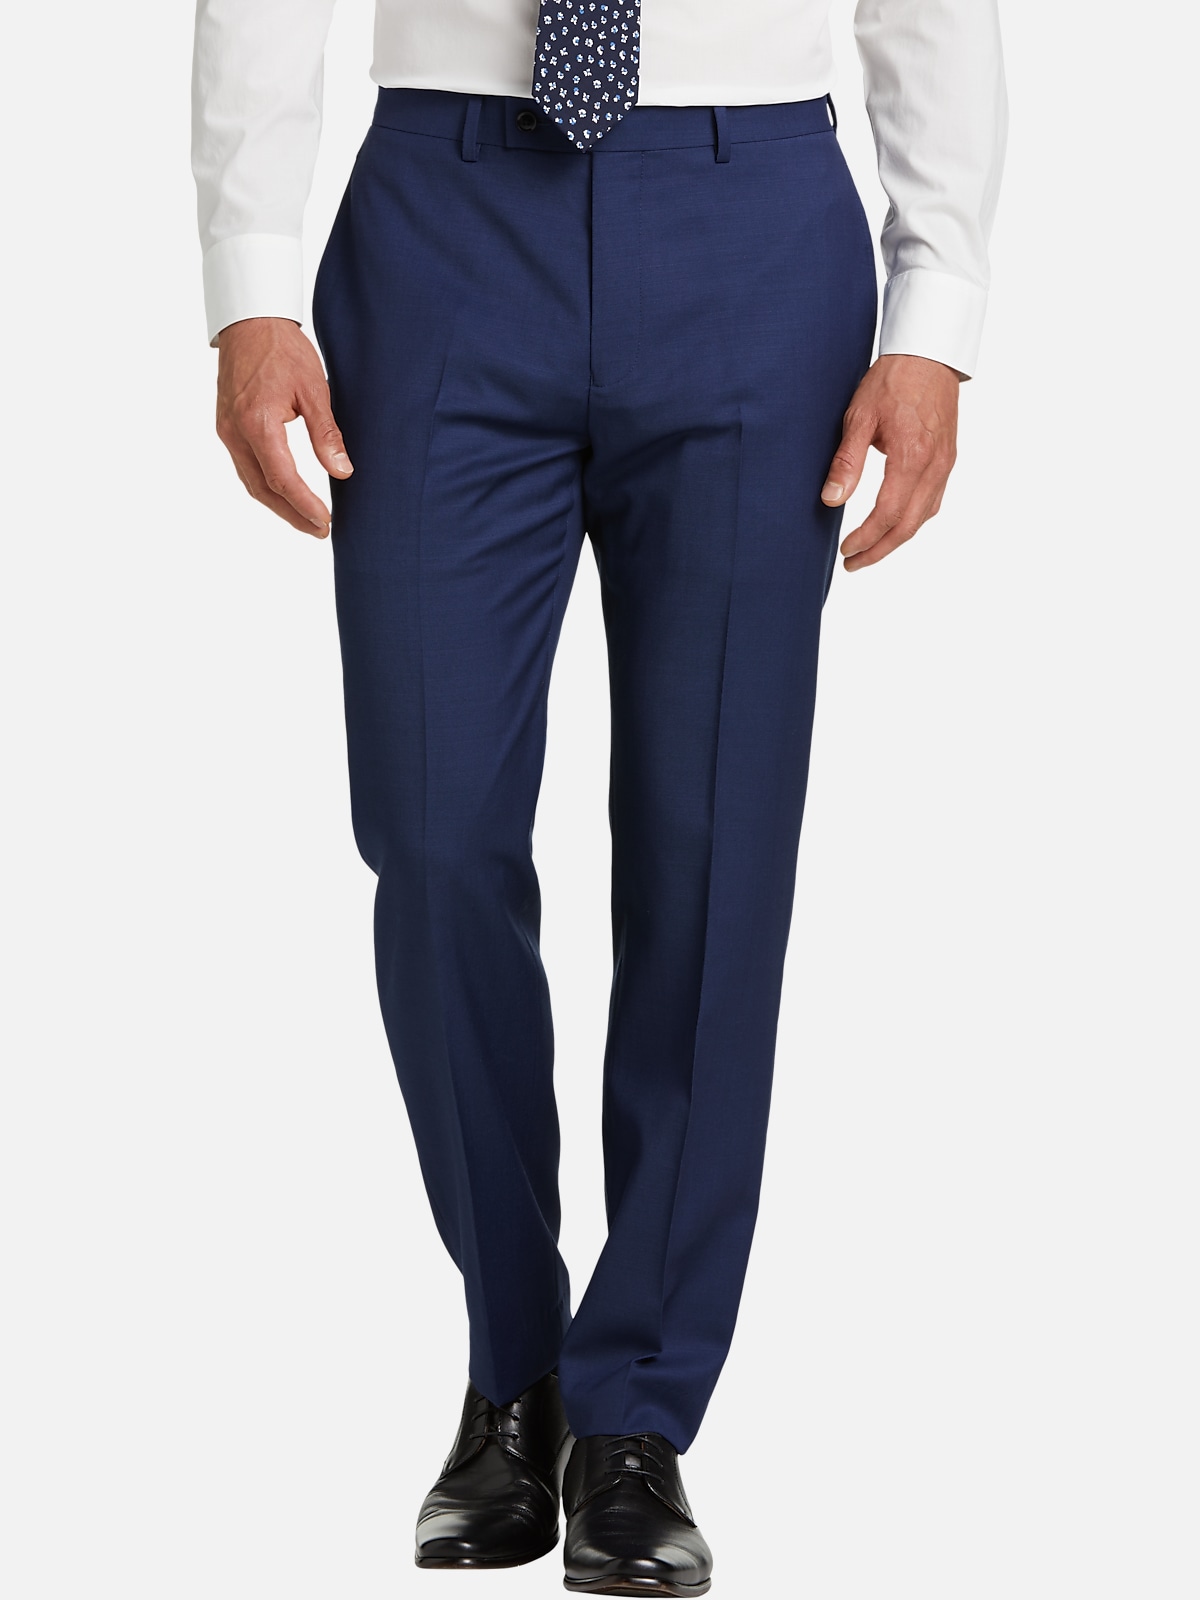 Calvin Klein Slim Fit Suit Separates Pants | All Clearance $39.99| Men ...